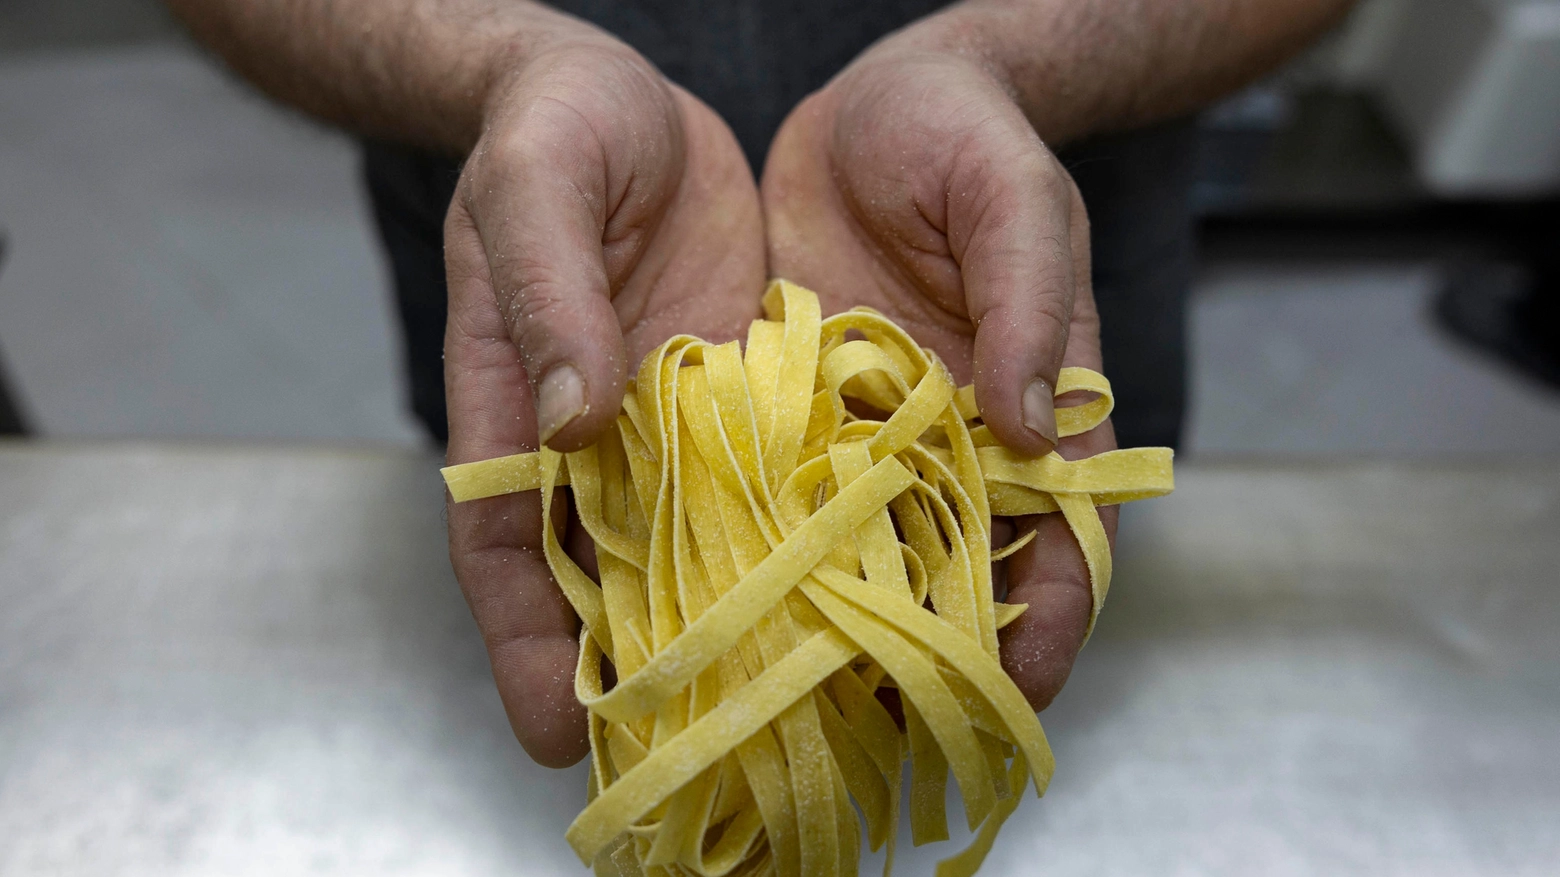 Pasta fresca realizzata a mano dai detenuti: questa l'iniziativa nel carcere Sant'Anna di Modena